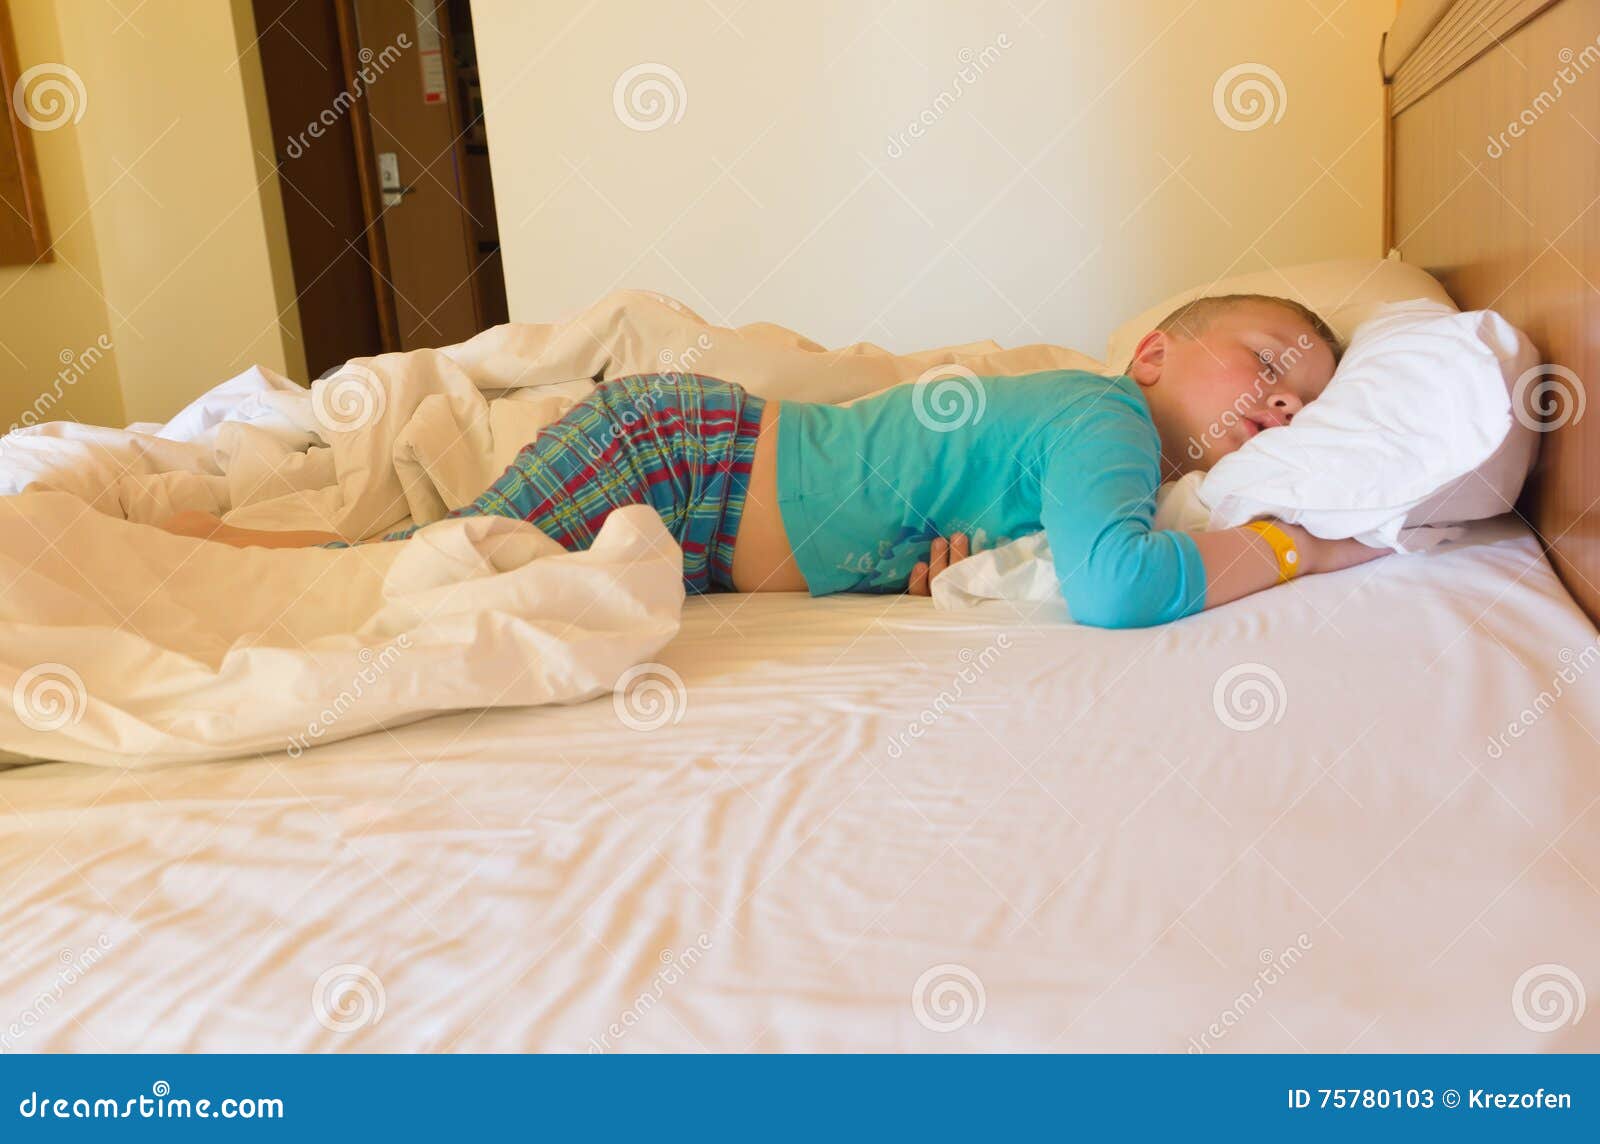 Спящему мальчику сняли трусы. Спящие мальчишки. Спящий мальчик без одеяла. Спящий ребенок в кровати.